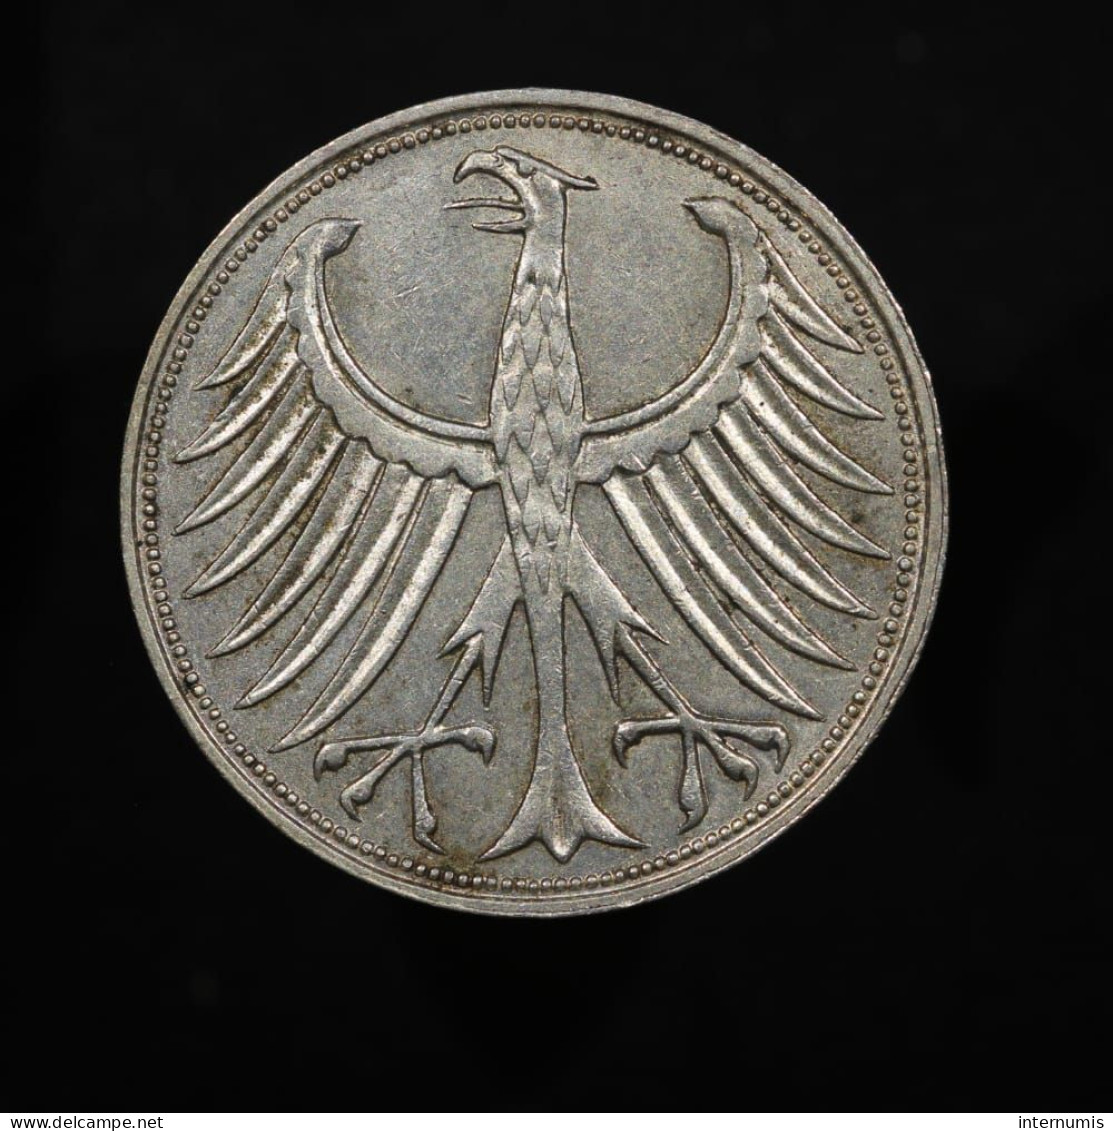 Allemagne / Germany, 5 Deutsche Mark, 1967, J - Hamburg, Argent (Silver), SUP (AU), KM#112 - 5 Marcos